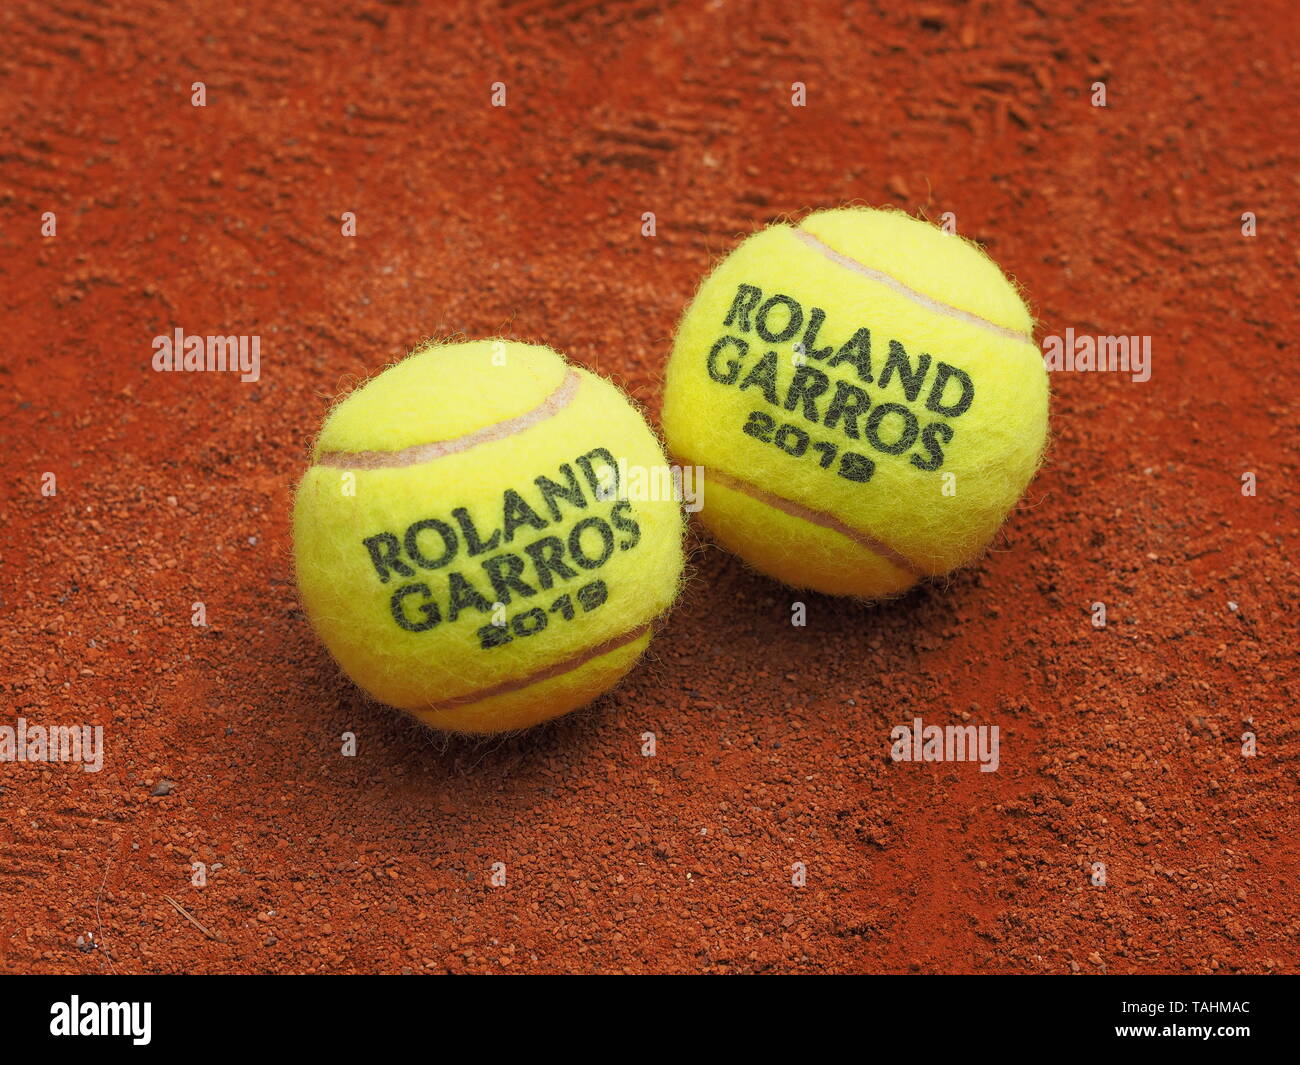 Paris, France - 26 mai 2019 : deux Roland Garros balle de tennis Grand Chelem sur surface terre battue Banque D'Images